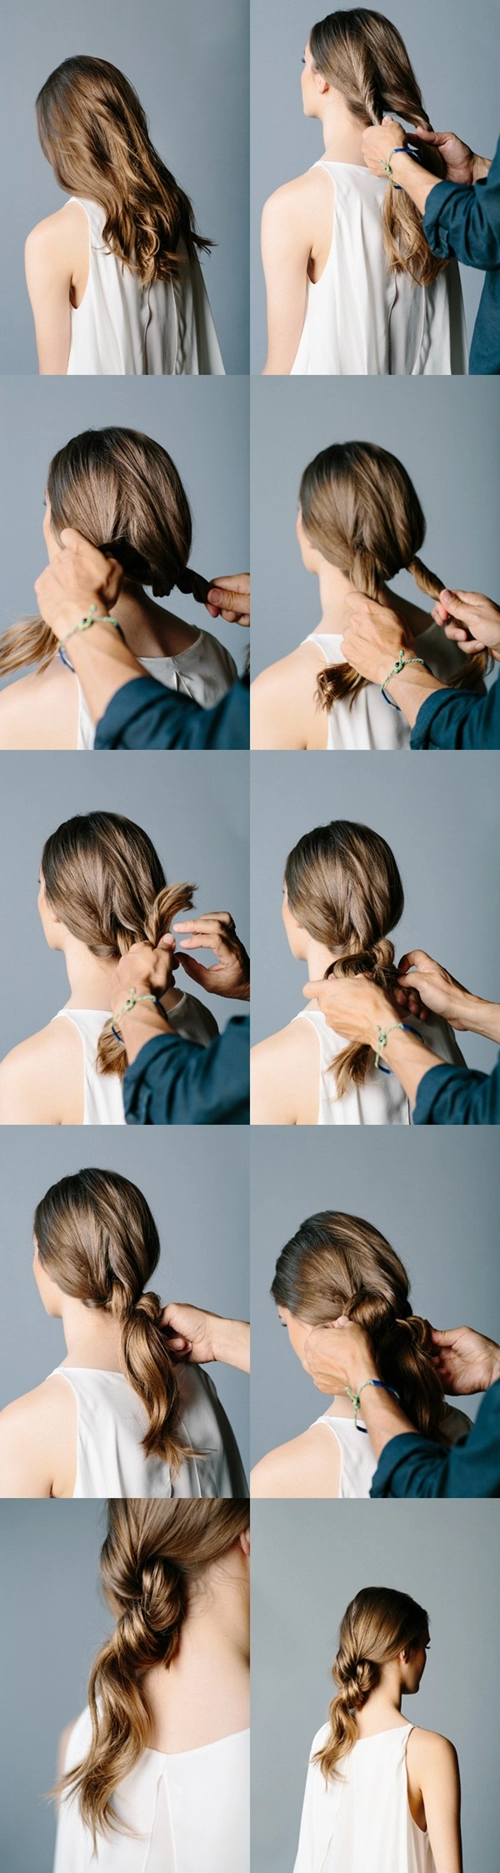 6 kiểu tóc dễ làm dễ đẹp hơn khi đầu bẩn